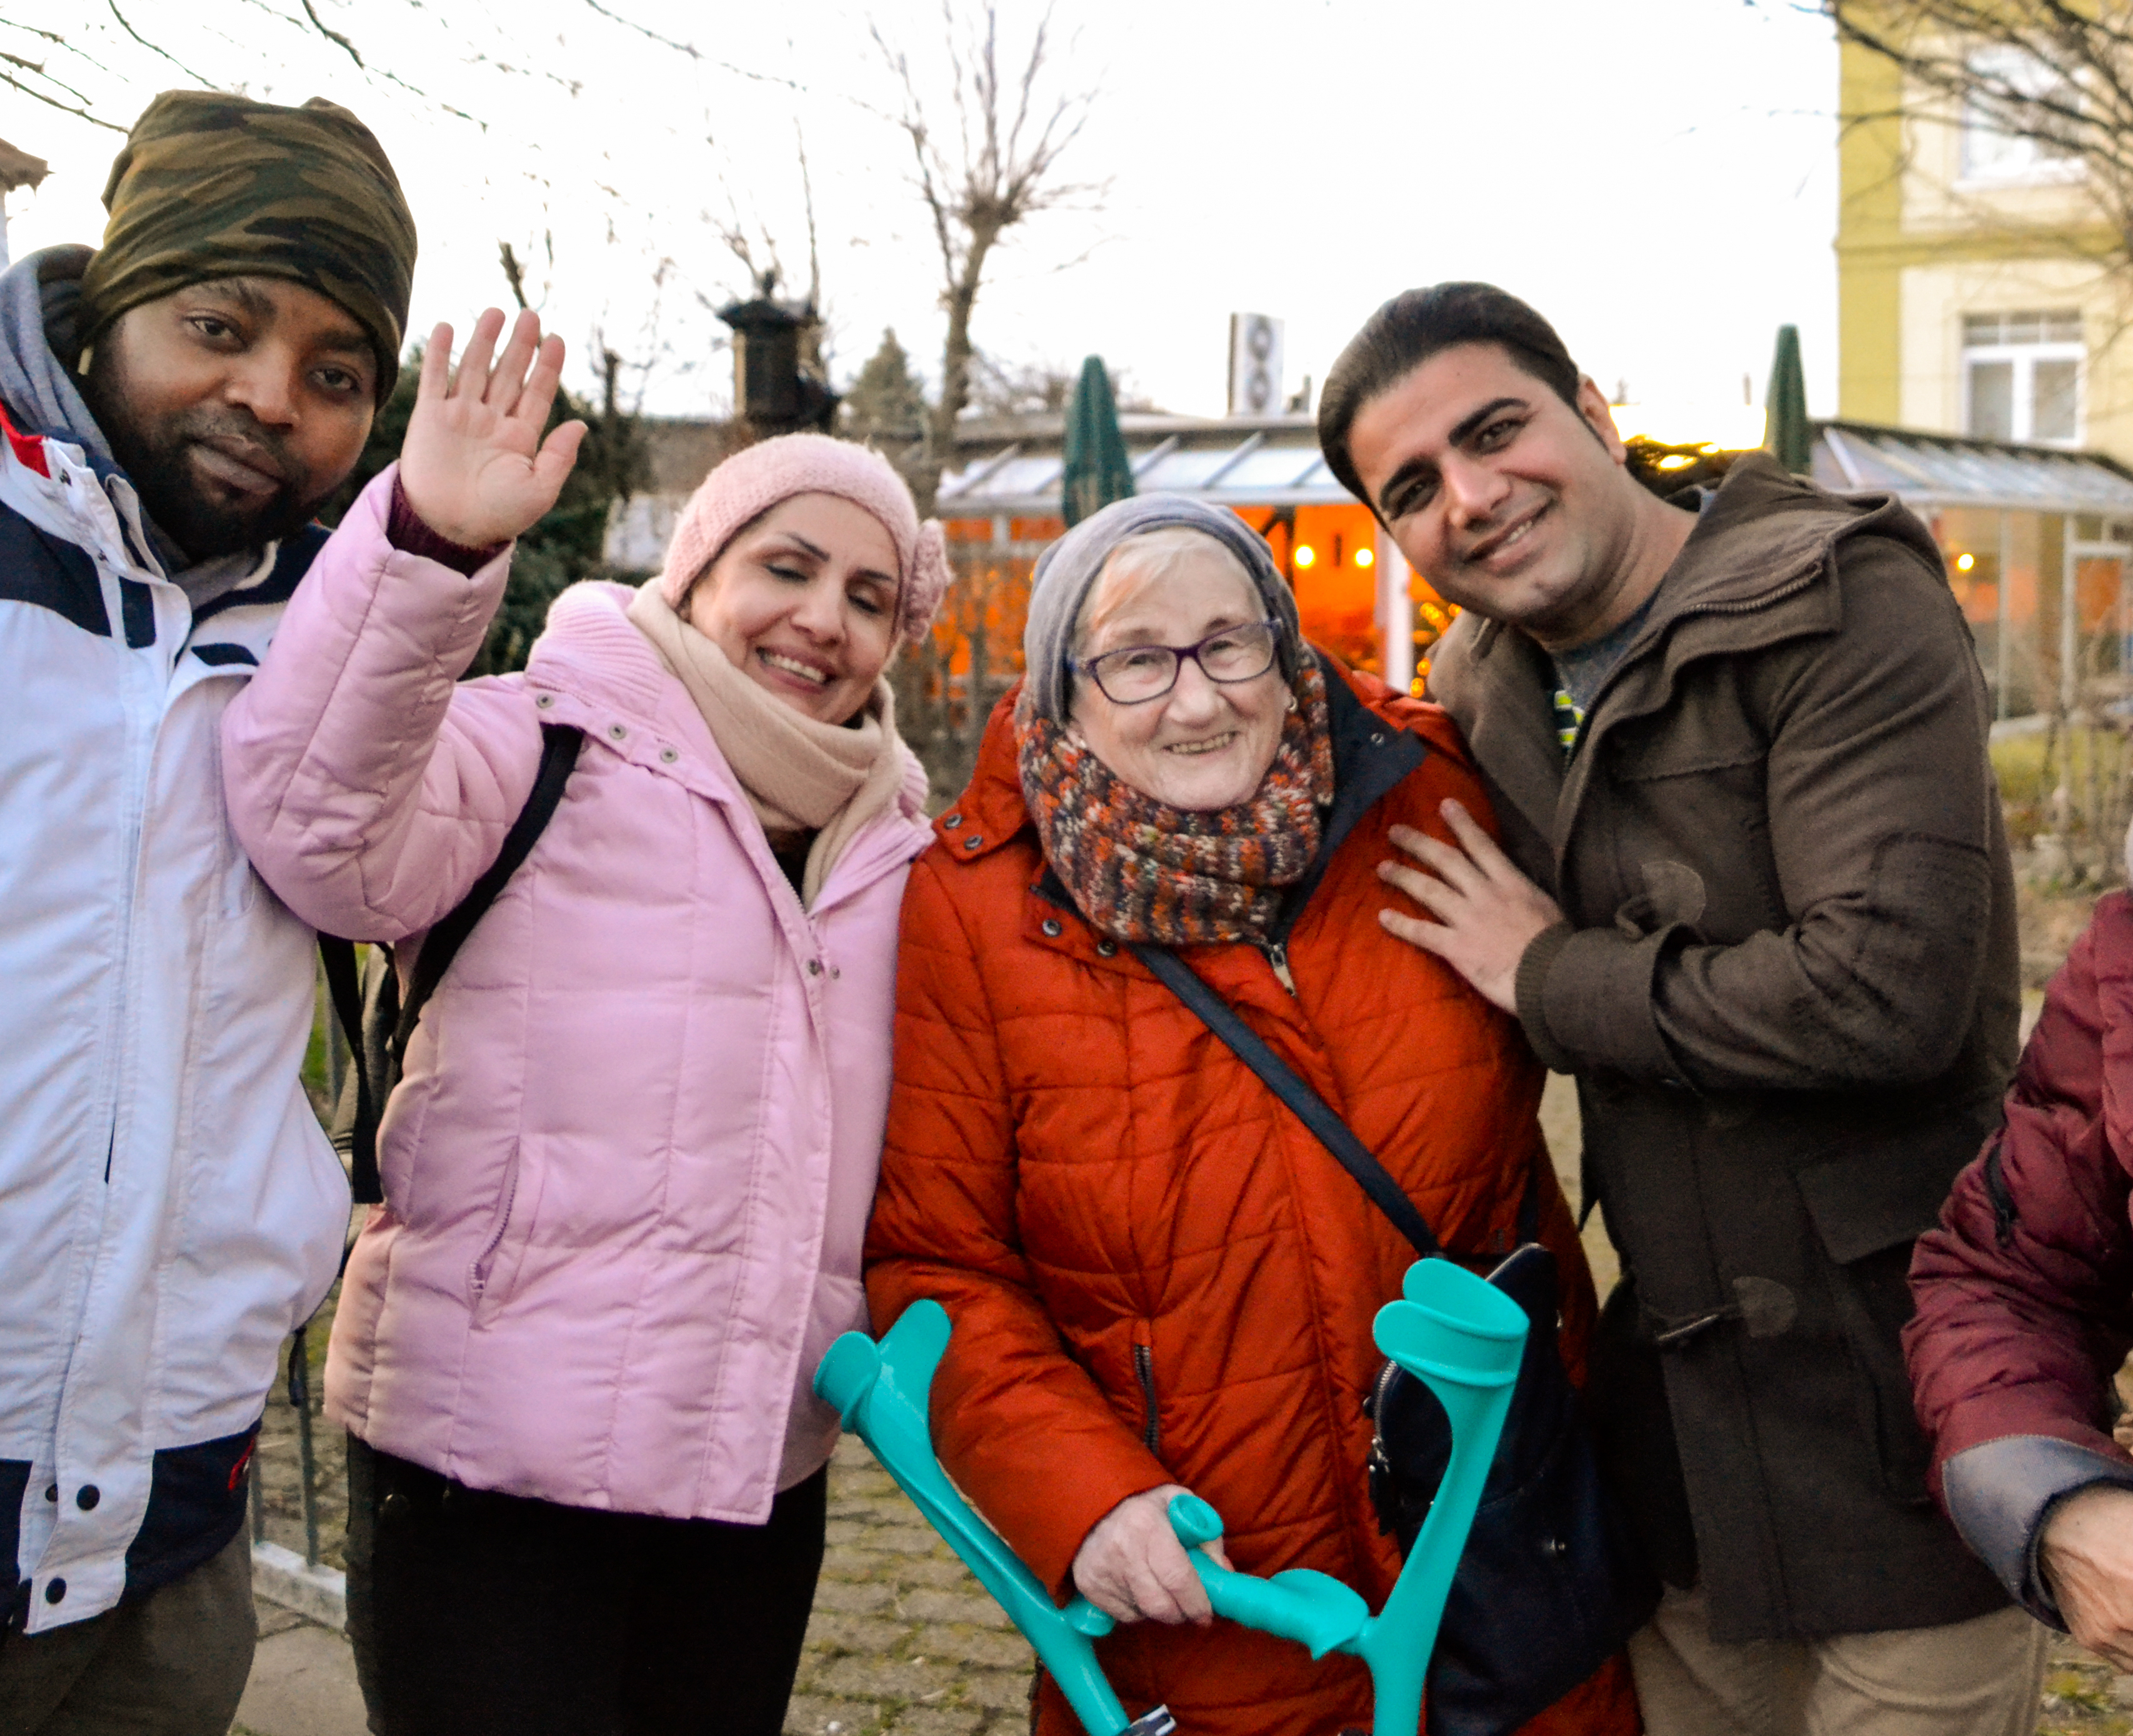 Drei ehrenamtliche mit Migrations- und Fluchterfahrung schauen gemeinsam mit einer älteren Frau in die Kamera.